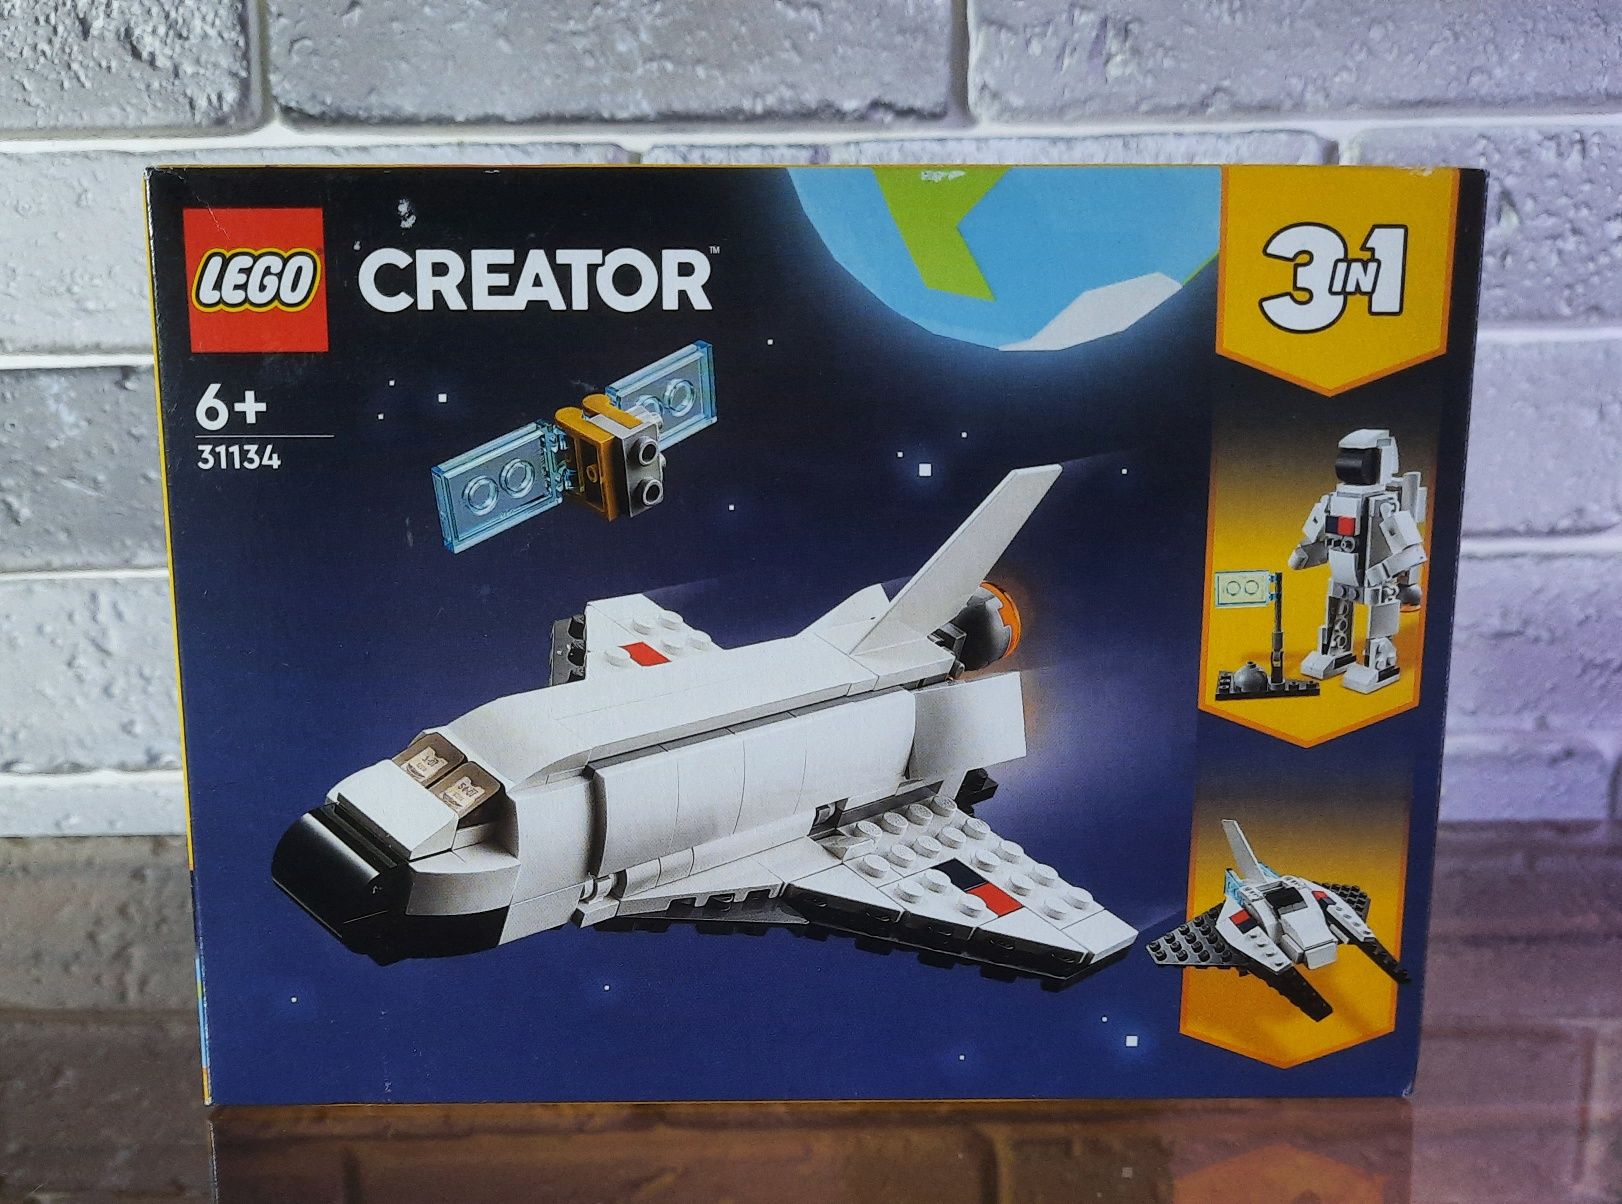 LEGO Creator 3 in 1 31124, 31134, 31135, 31140